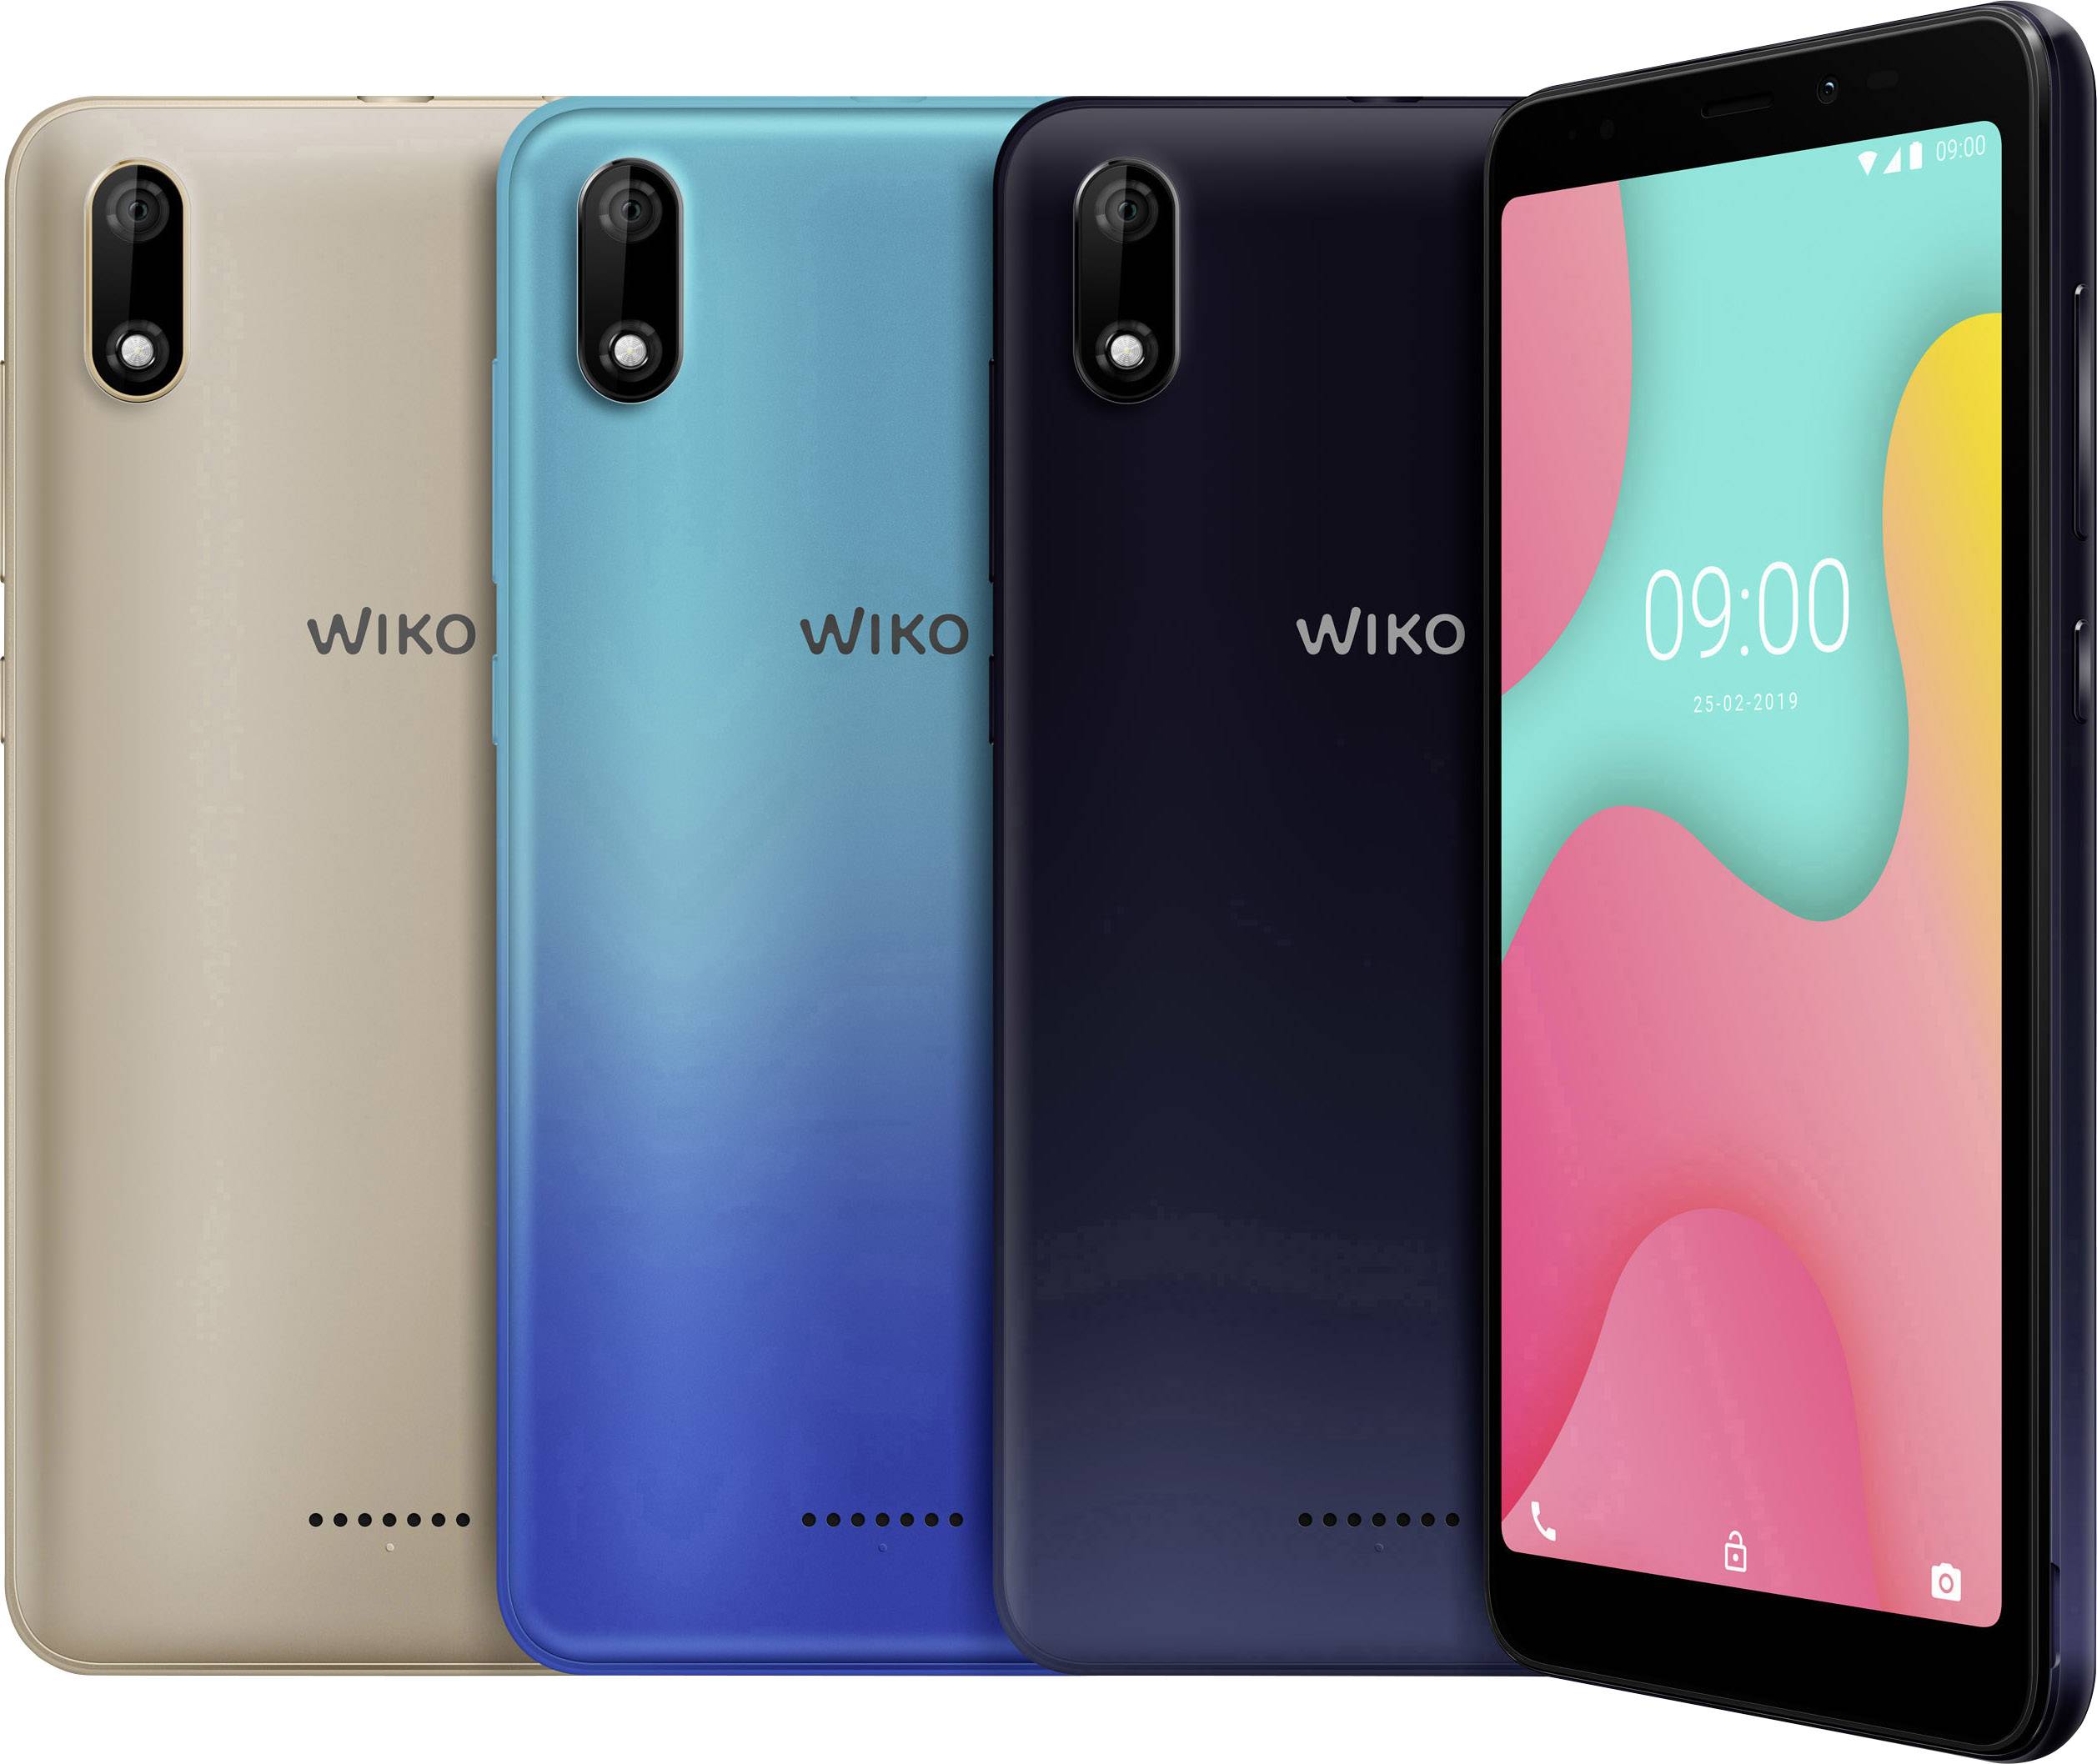  WIKO  Y60  Smartphone 16 GB 5 45 inch 13 8 cm Hybrid slot 